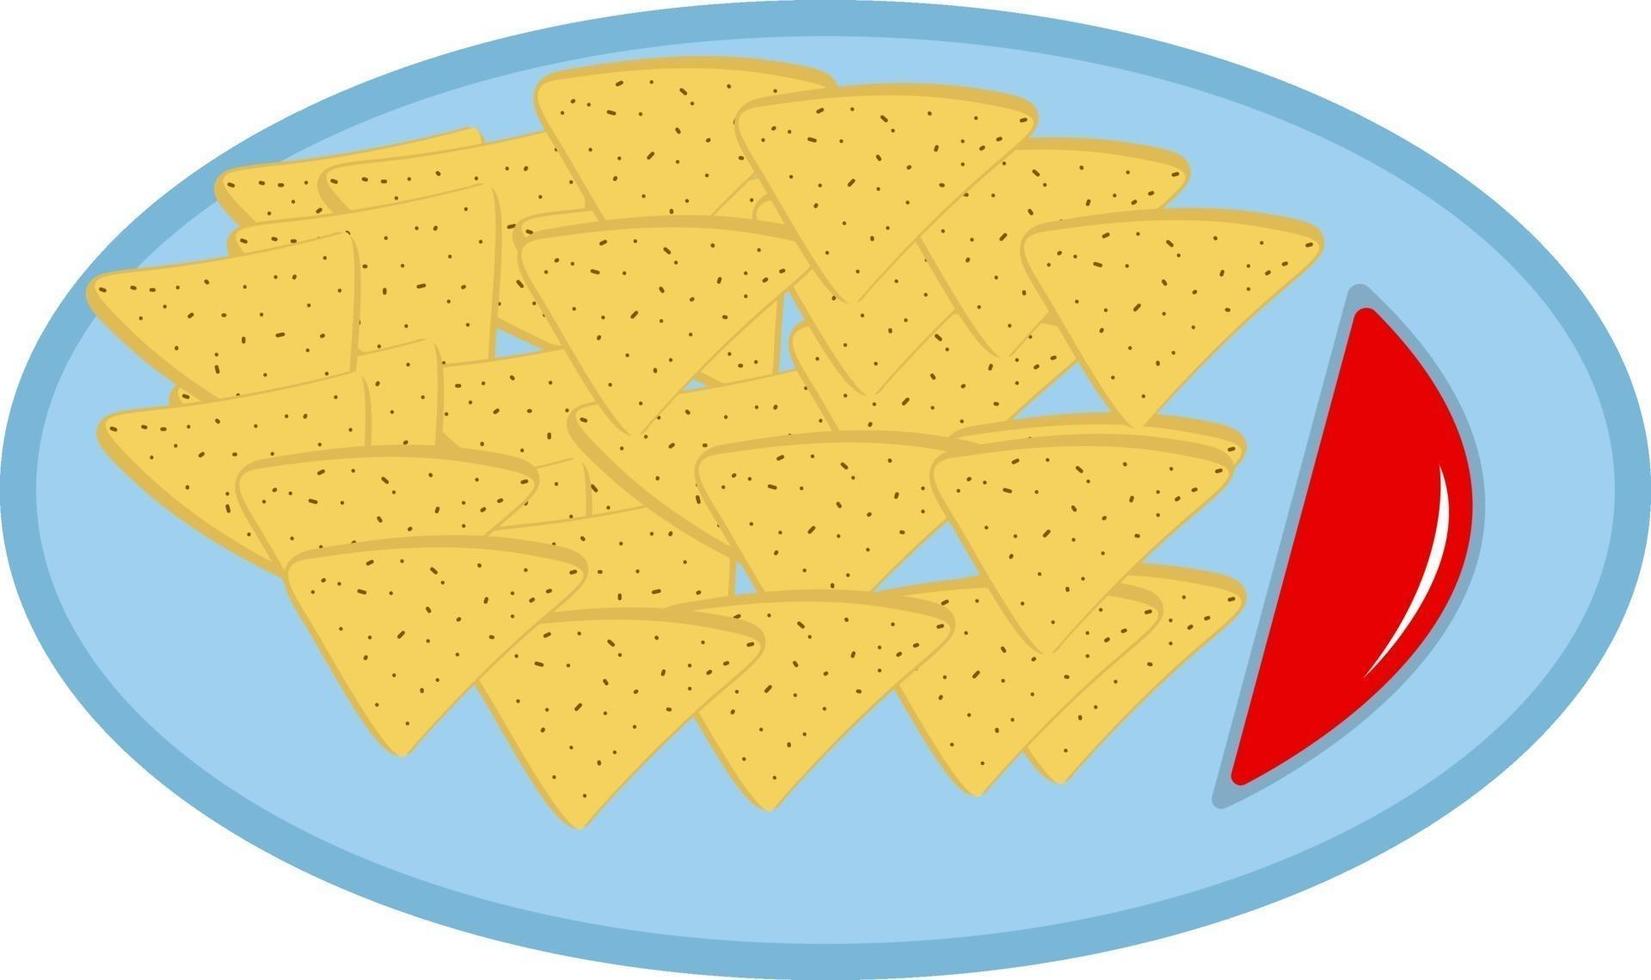 comida rápida en un plato, ilustración, vector sobre un fondo blanco.